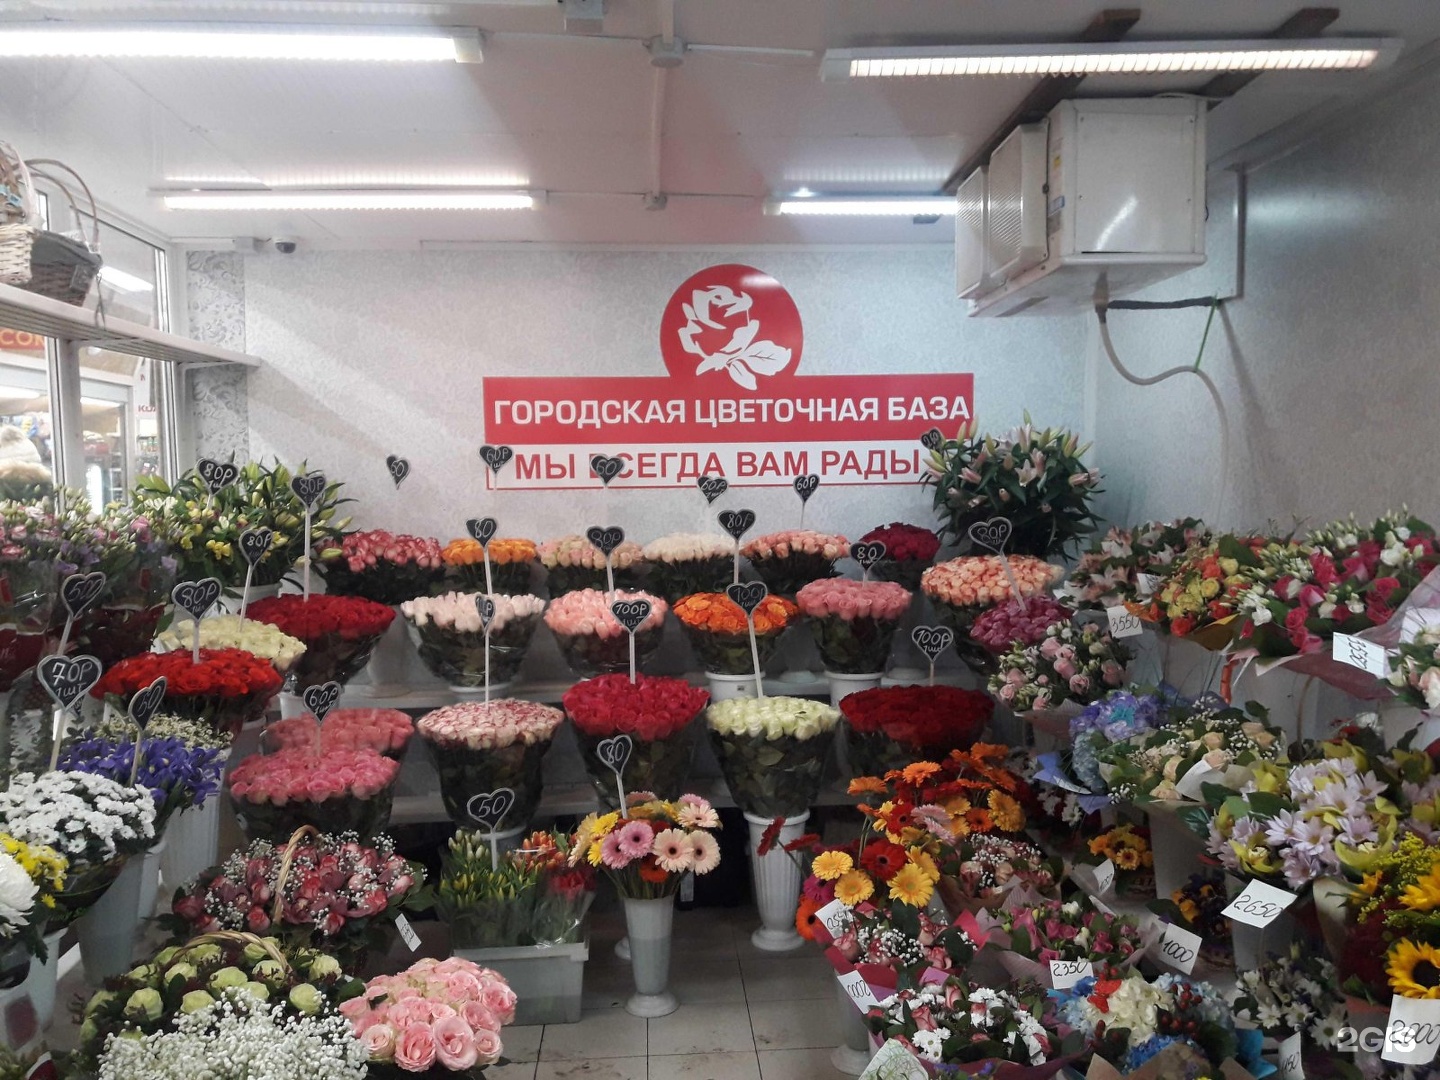 Городская база цветов Ивантеевка Новоселки